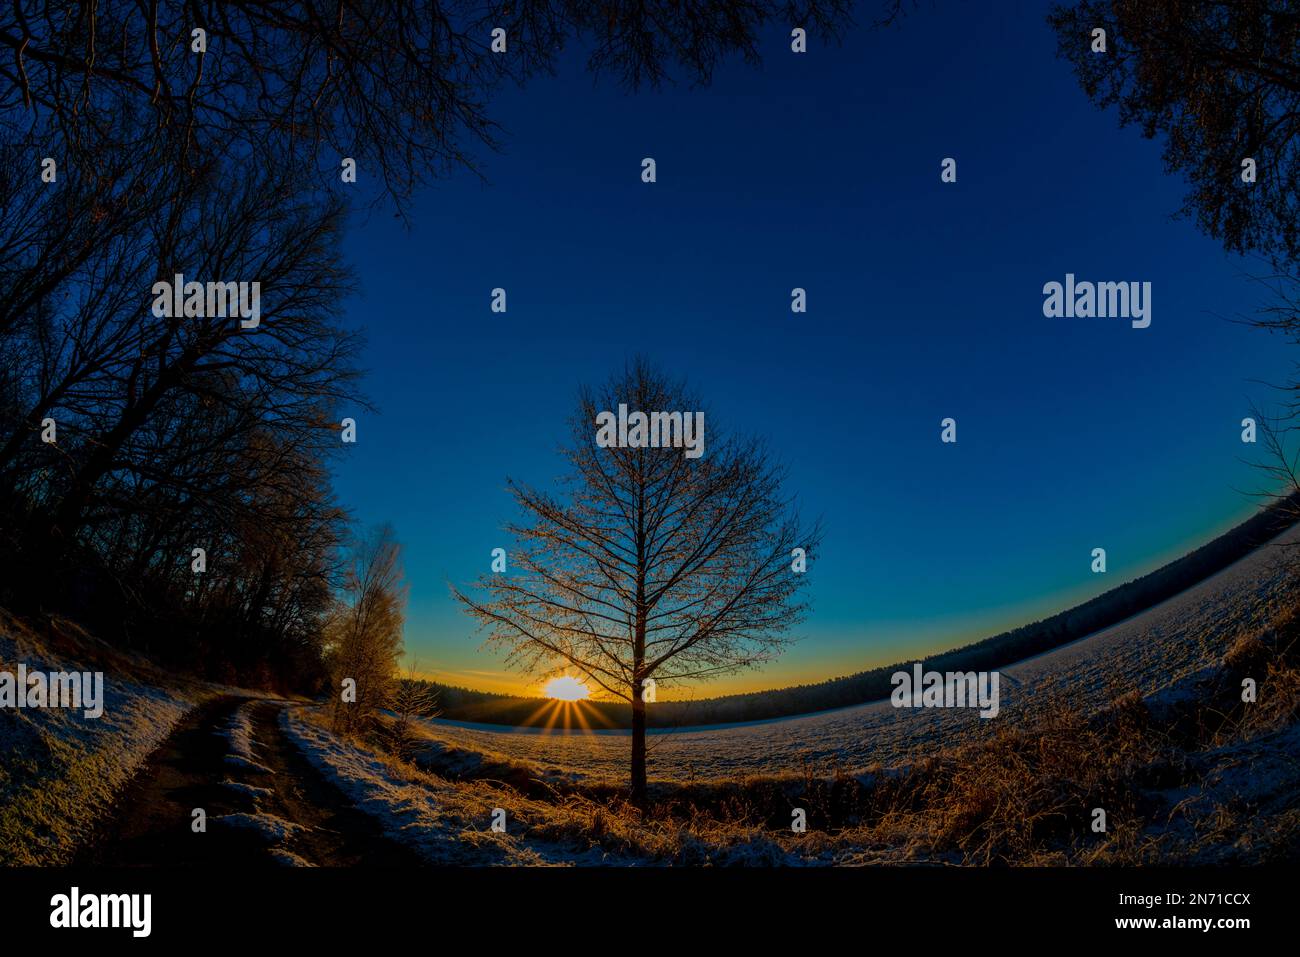 Lever de soleil en hiver, terre agricole et un peu de neige, photographié avec un objectif fisheye Banque D'Images